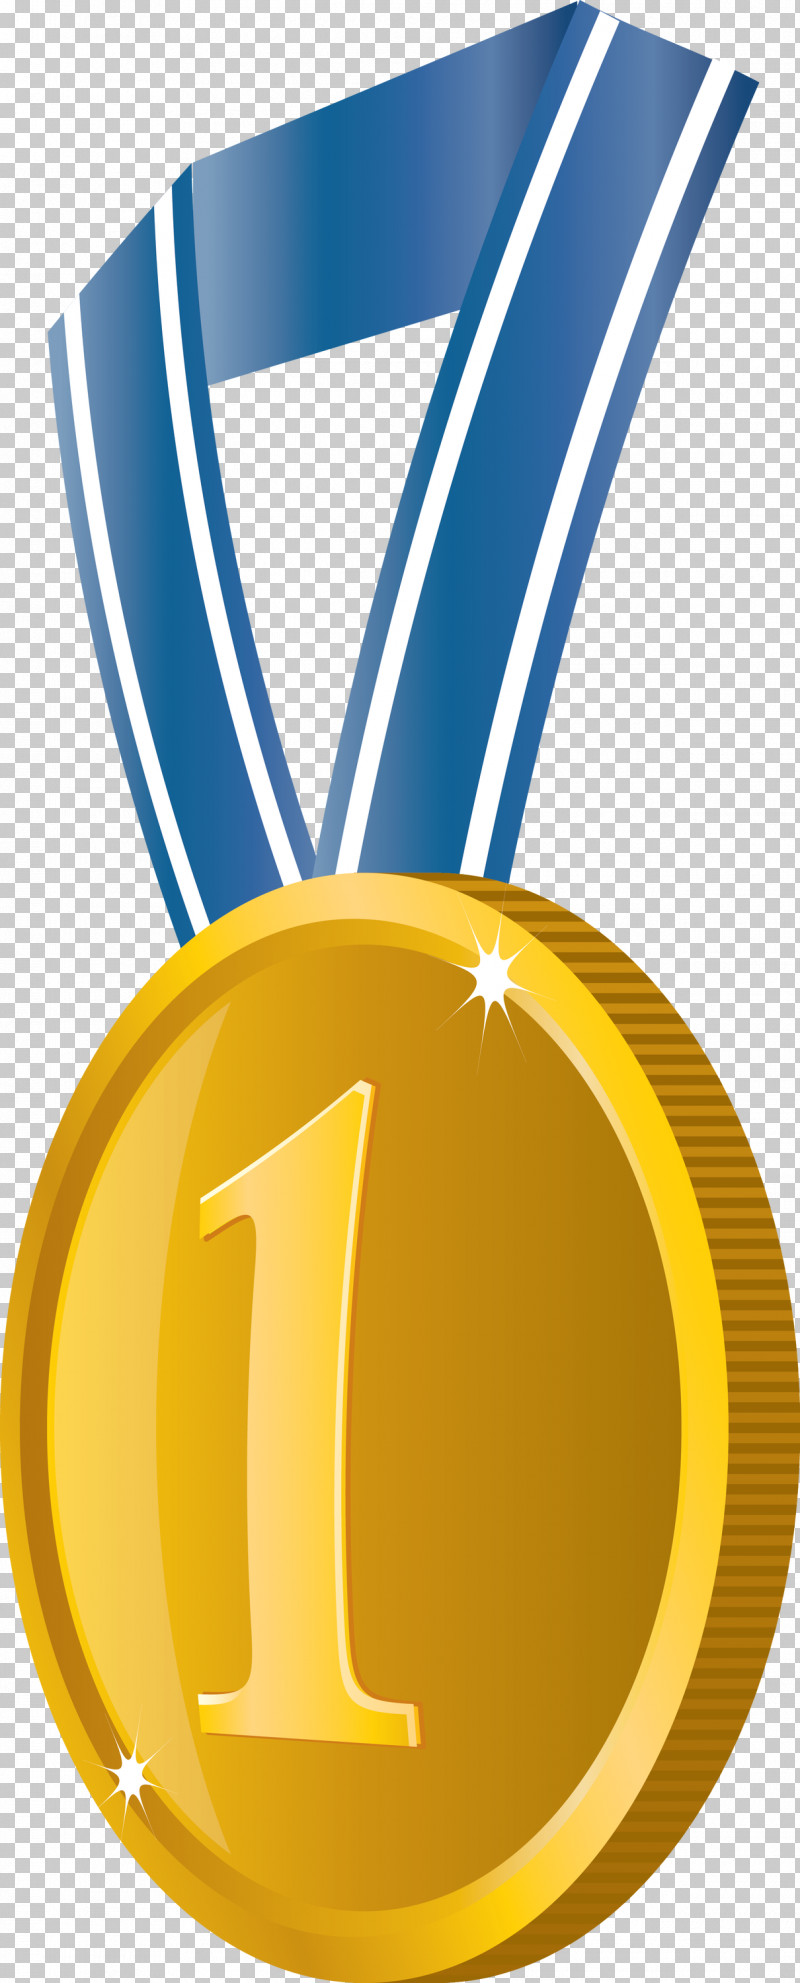 Gold Badge No 1 Badge Award Gold Badge PNG, Clipart, Award, Award Gold Badge, Gold, Gold Badge, Gold Medal Free PNG Download